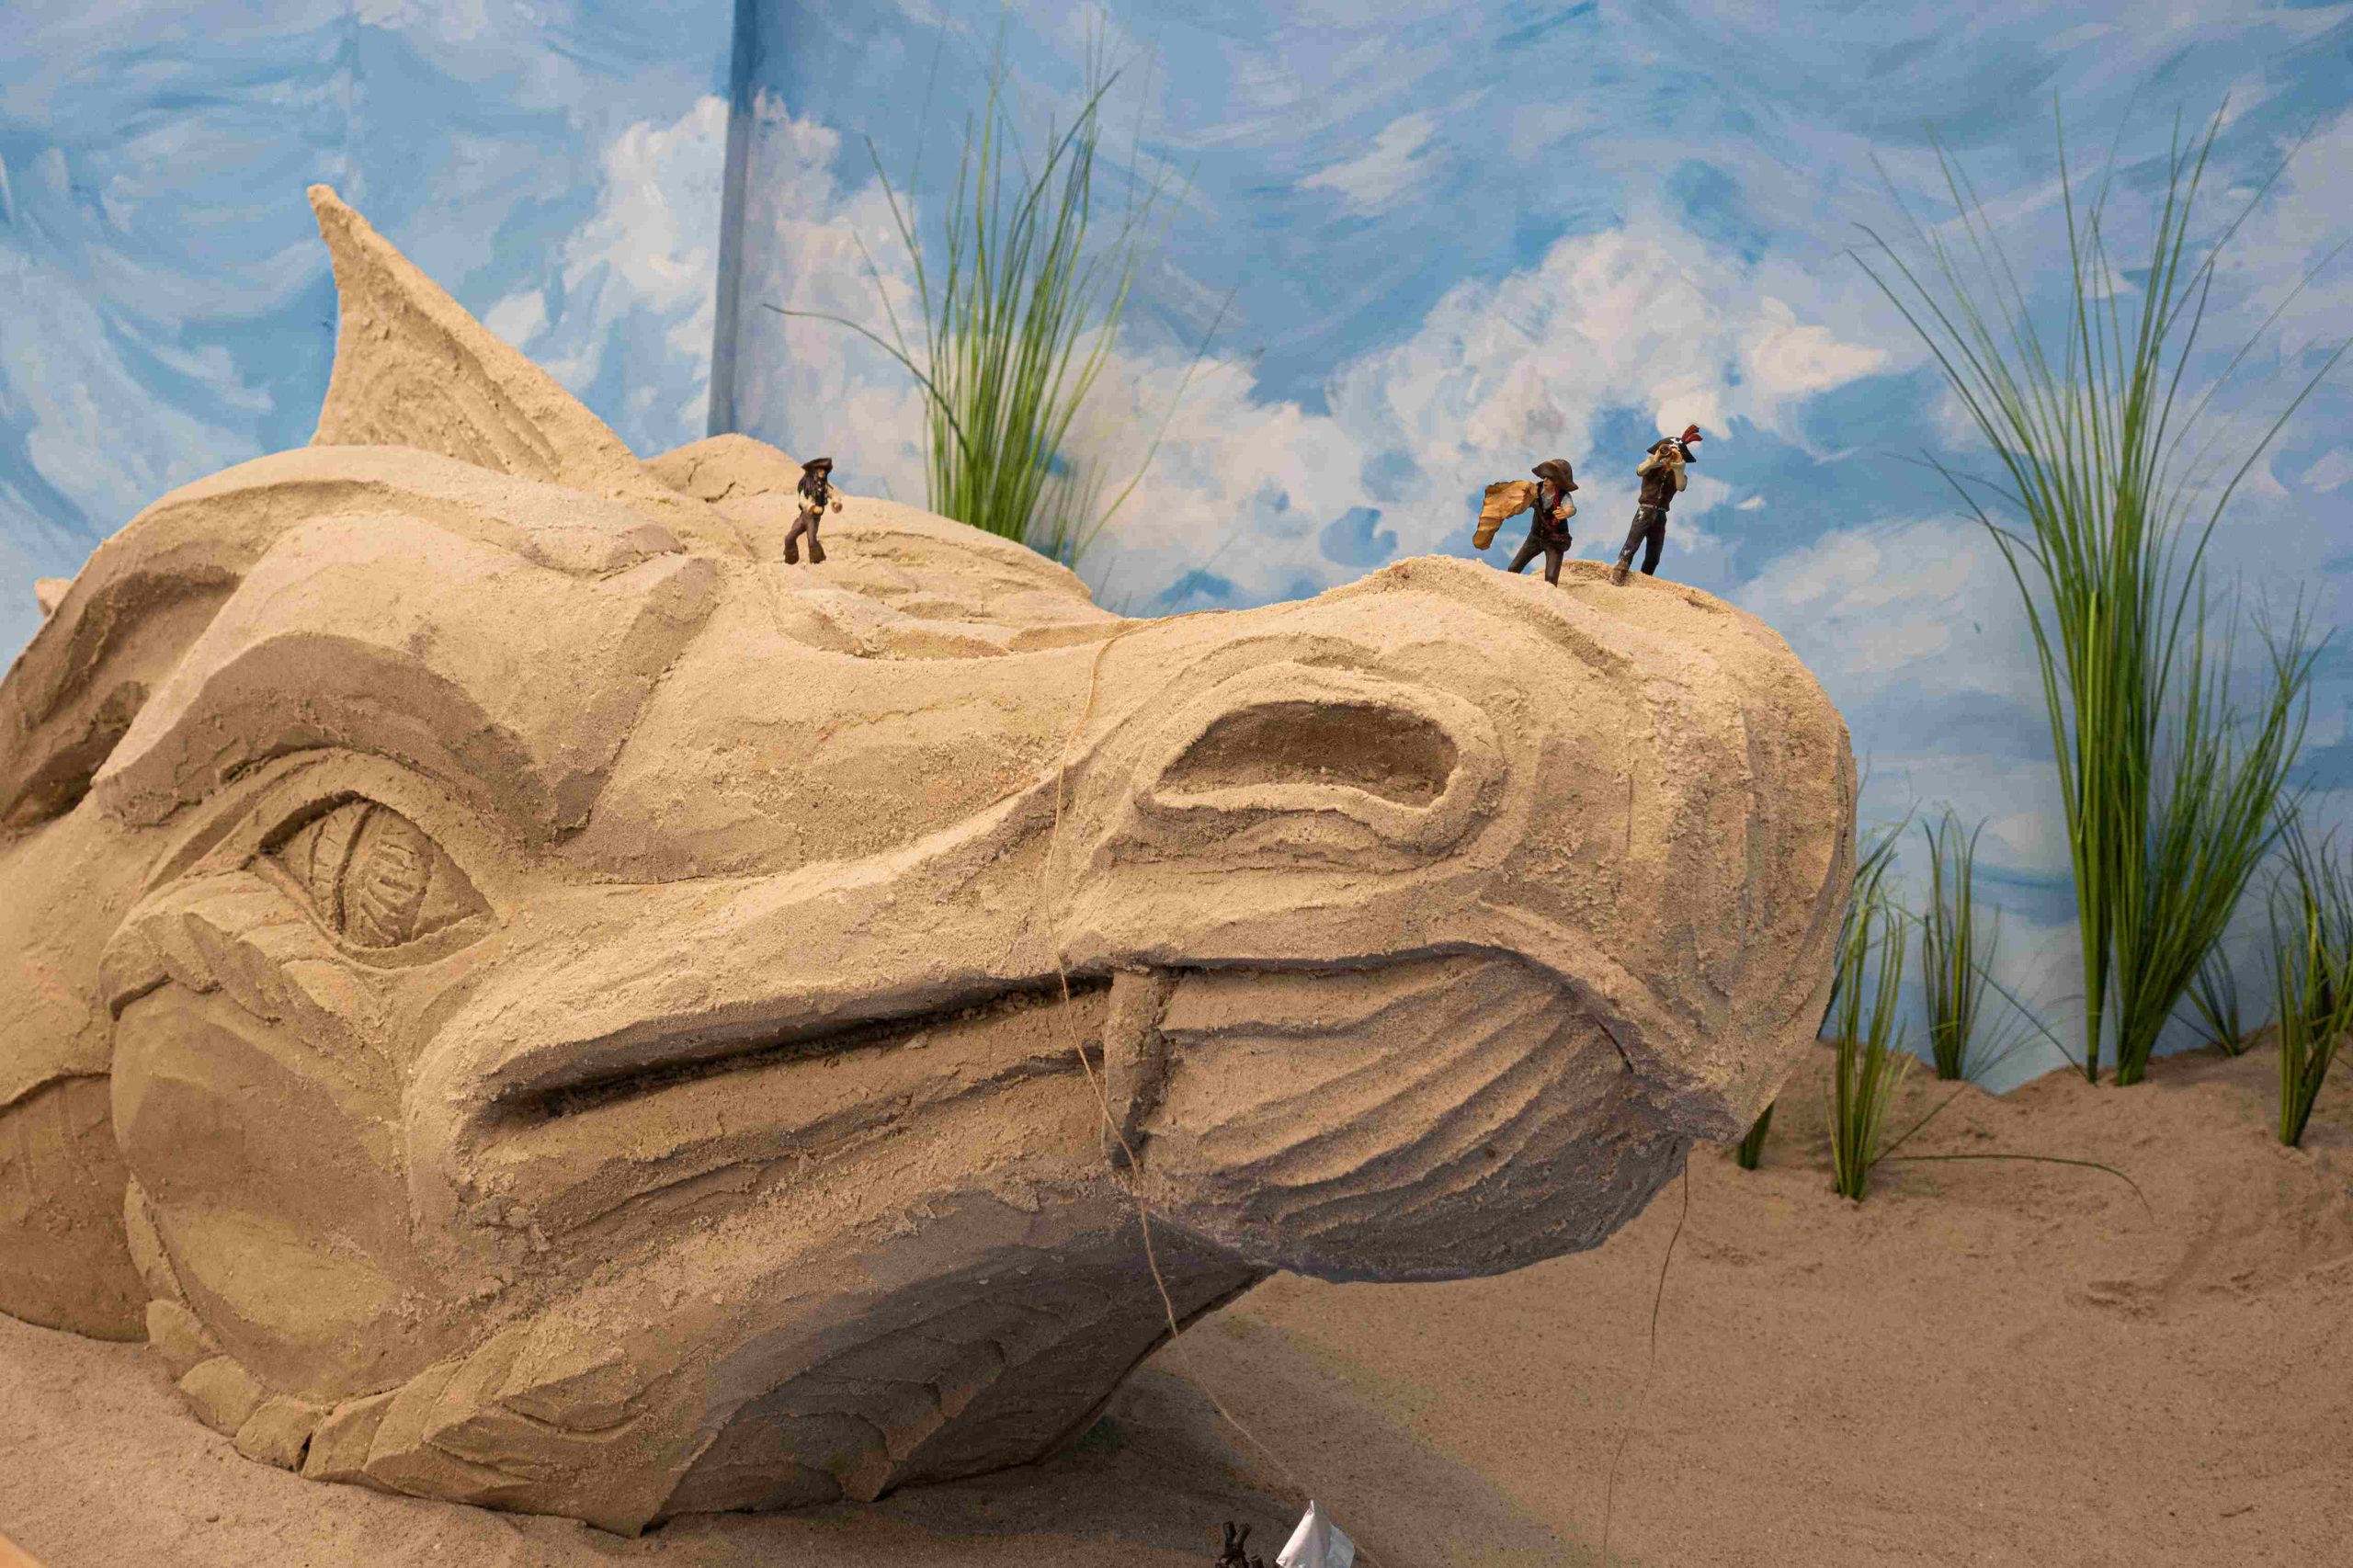 Od 14 czerwca, w Kolejkowie będzie można zobaczyć stworzone z ponad 10 ton piasku Miasto z Piasku! Obiekty inspirowane są sztuką i ekologią.